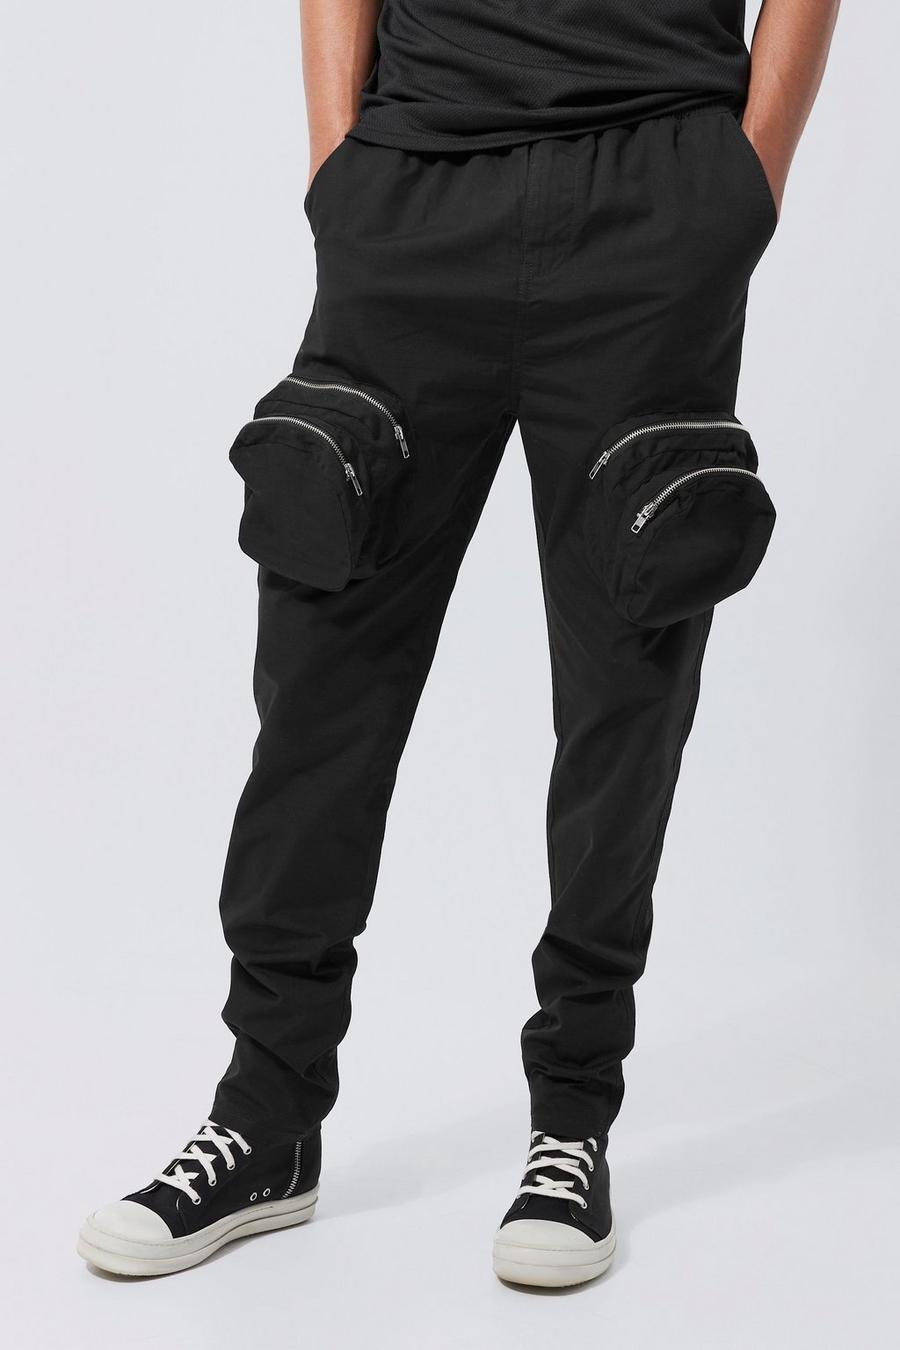 Pantalón Tall cargo ajustado elegante con cremallera 3D, Black negro